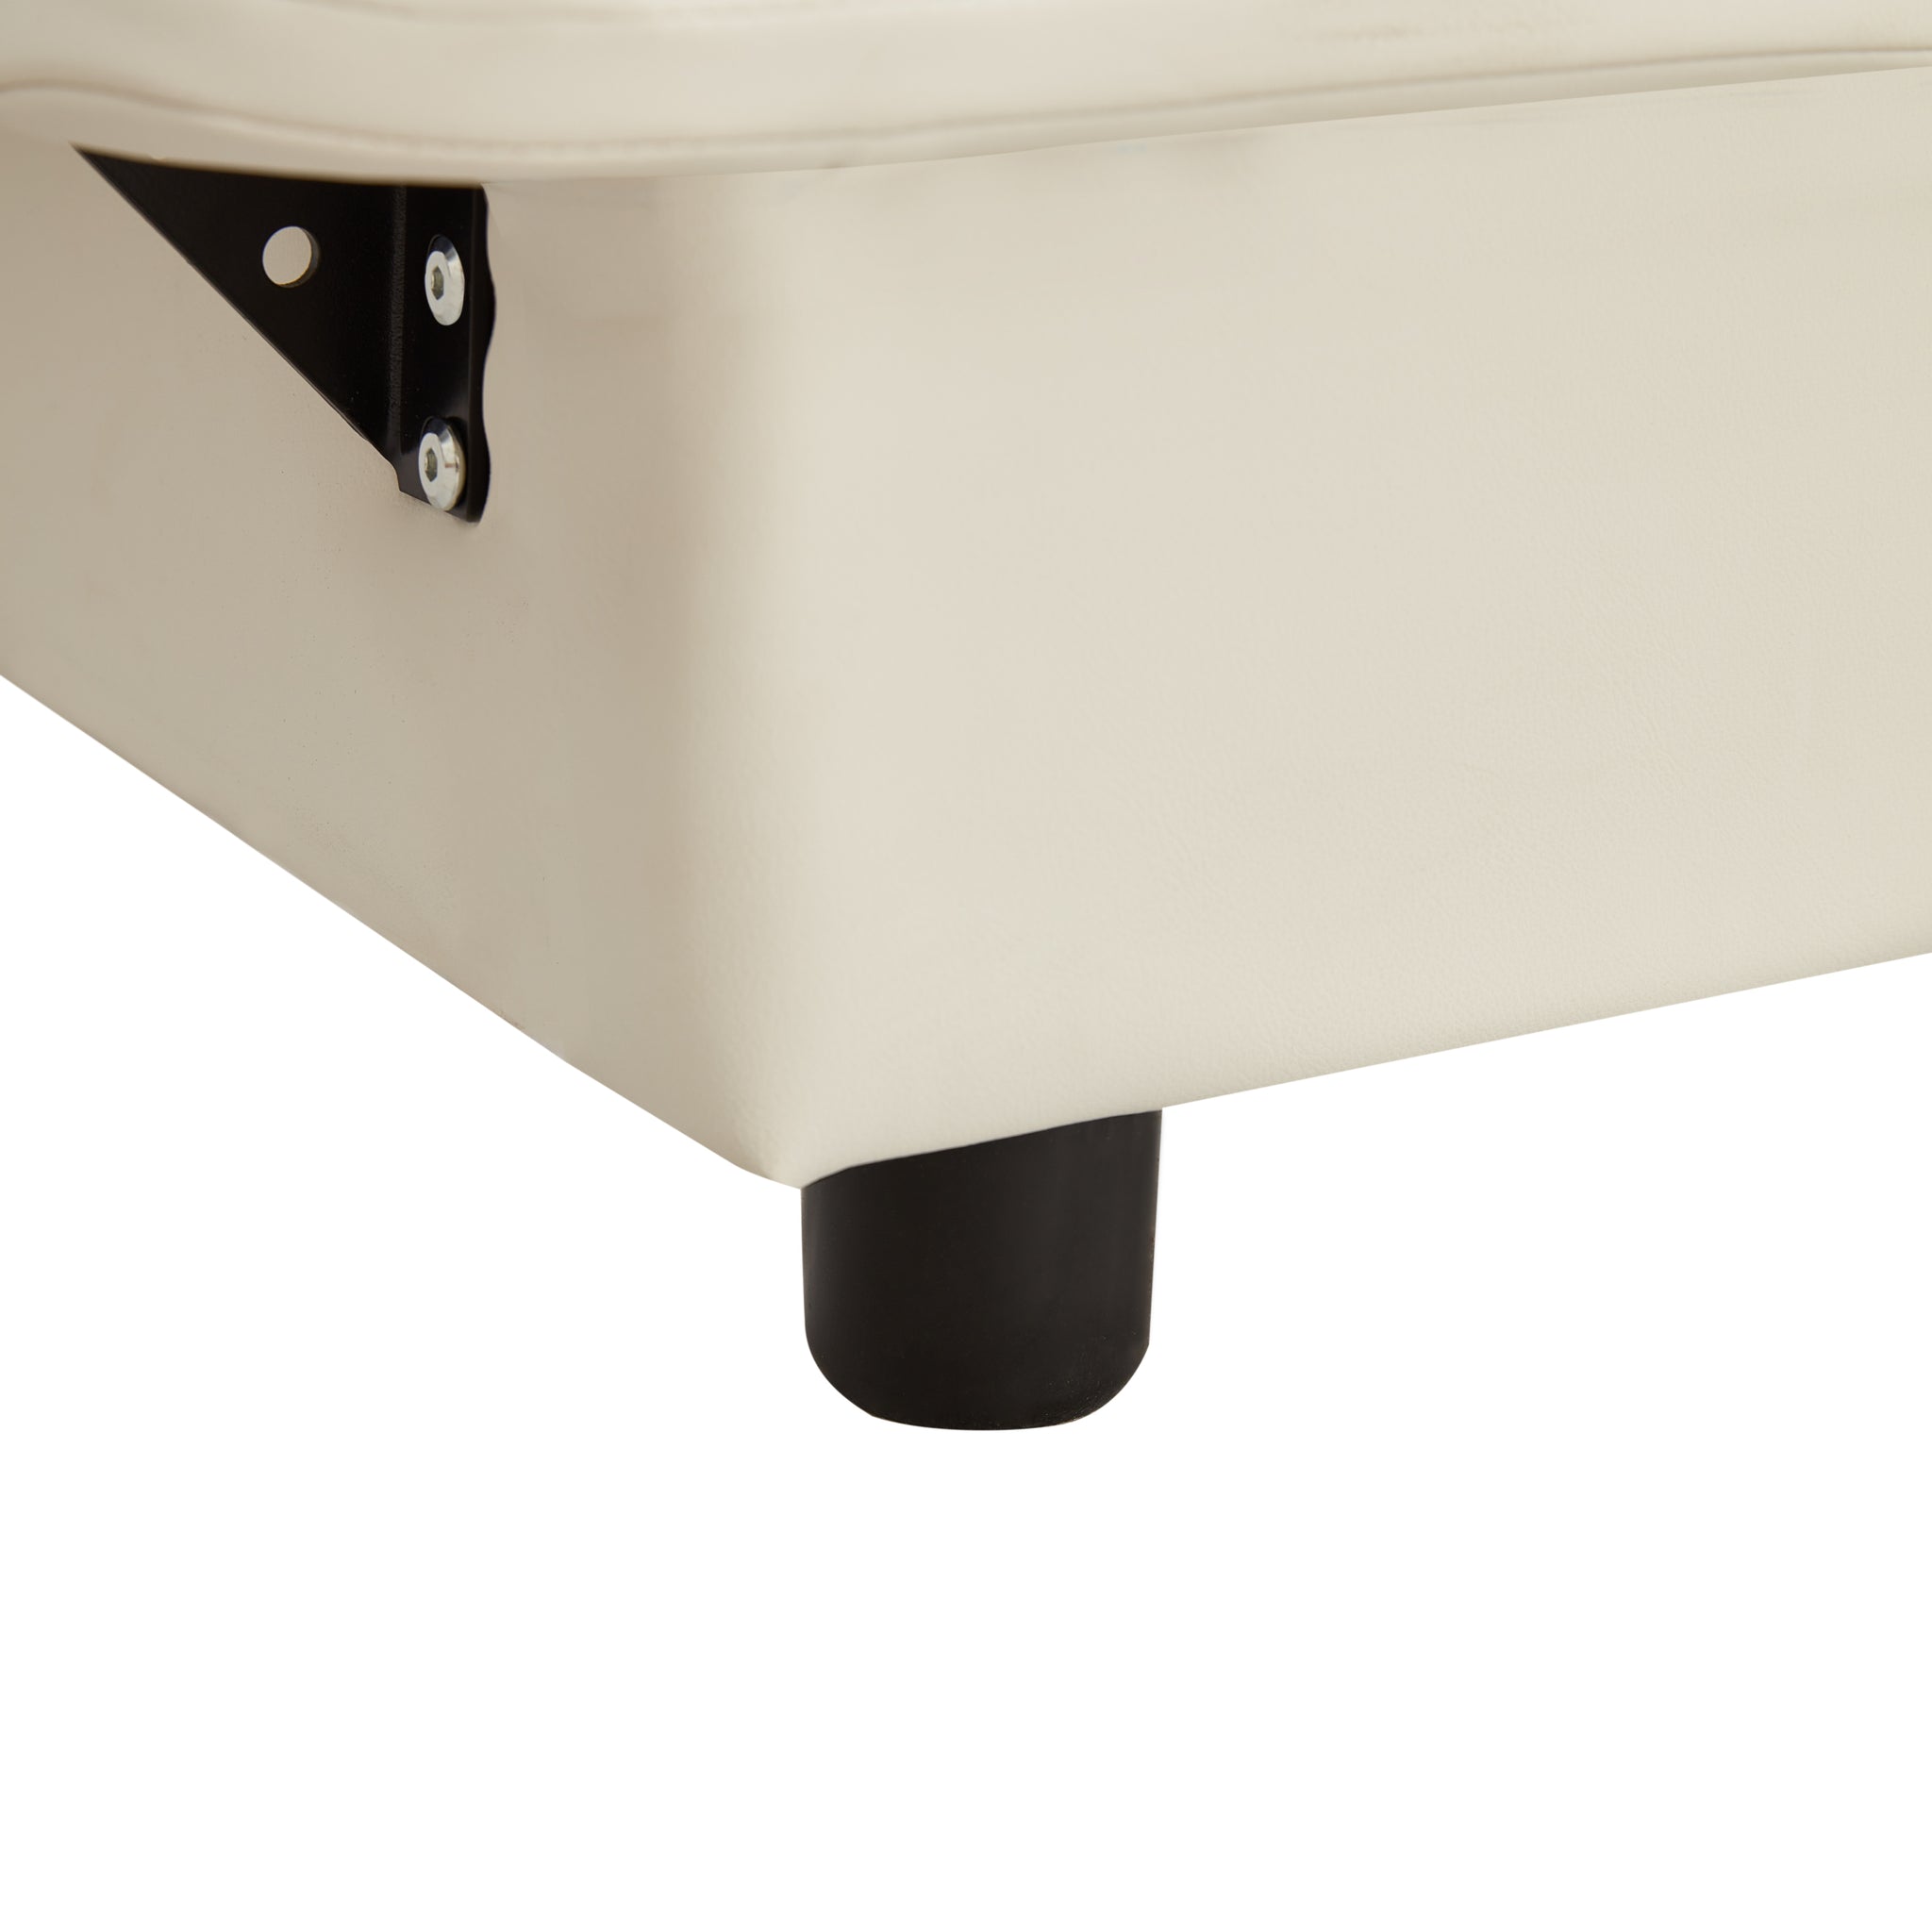 Full Size Upholstered Platform Bed with Sensor Light white-upholstered